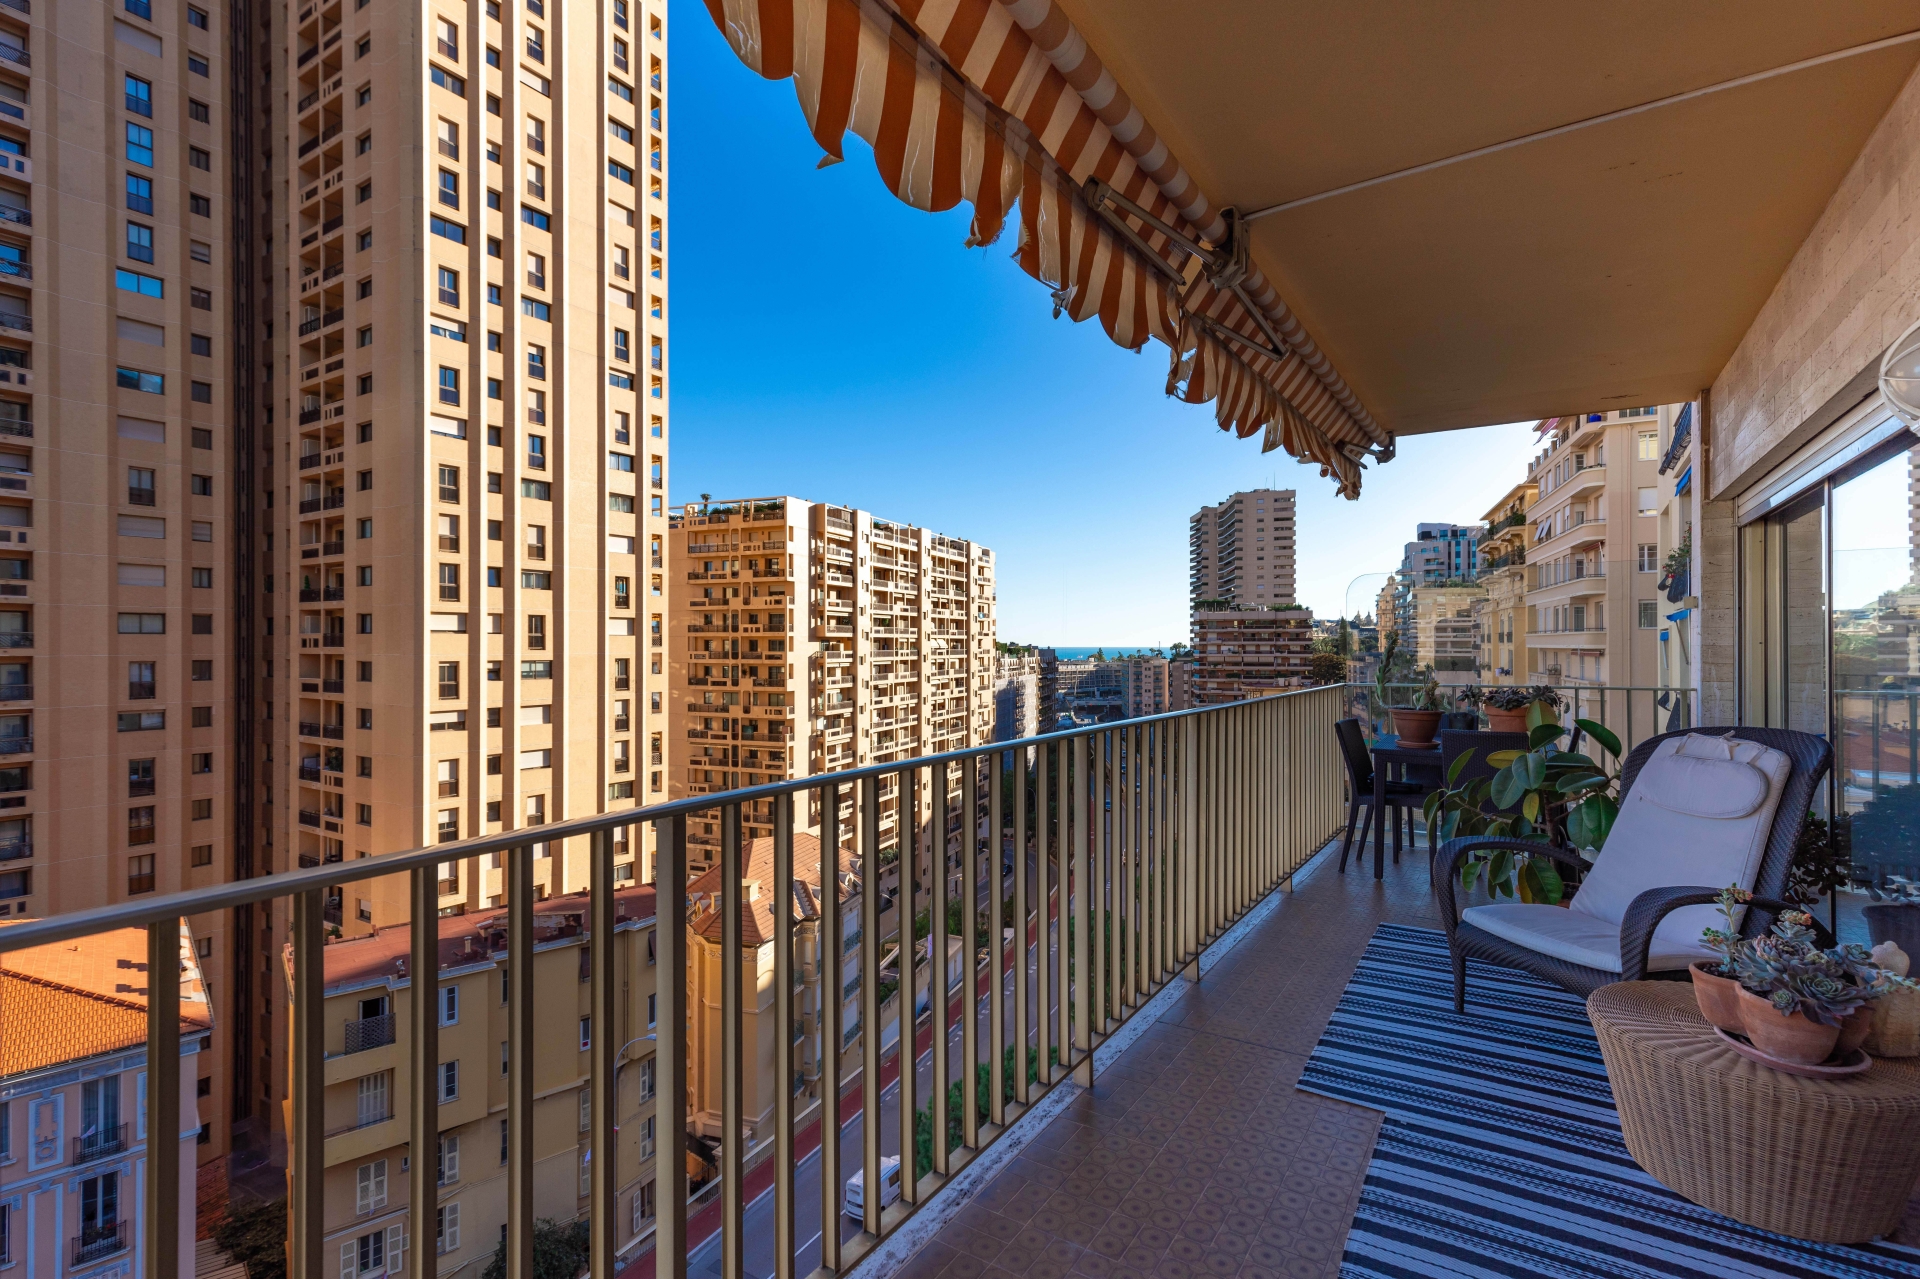 Dotta Appartement de 3 pieces a vendre - HERSILIA - Larvotto - Monaco - img074a8833